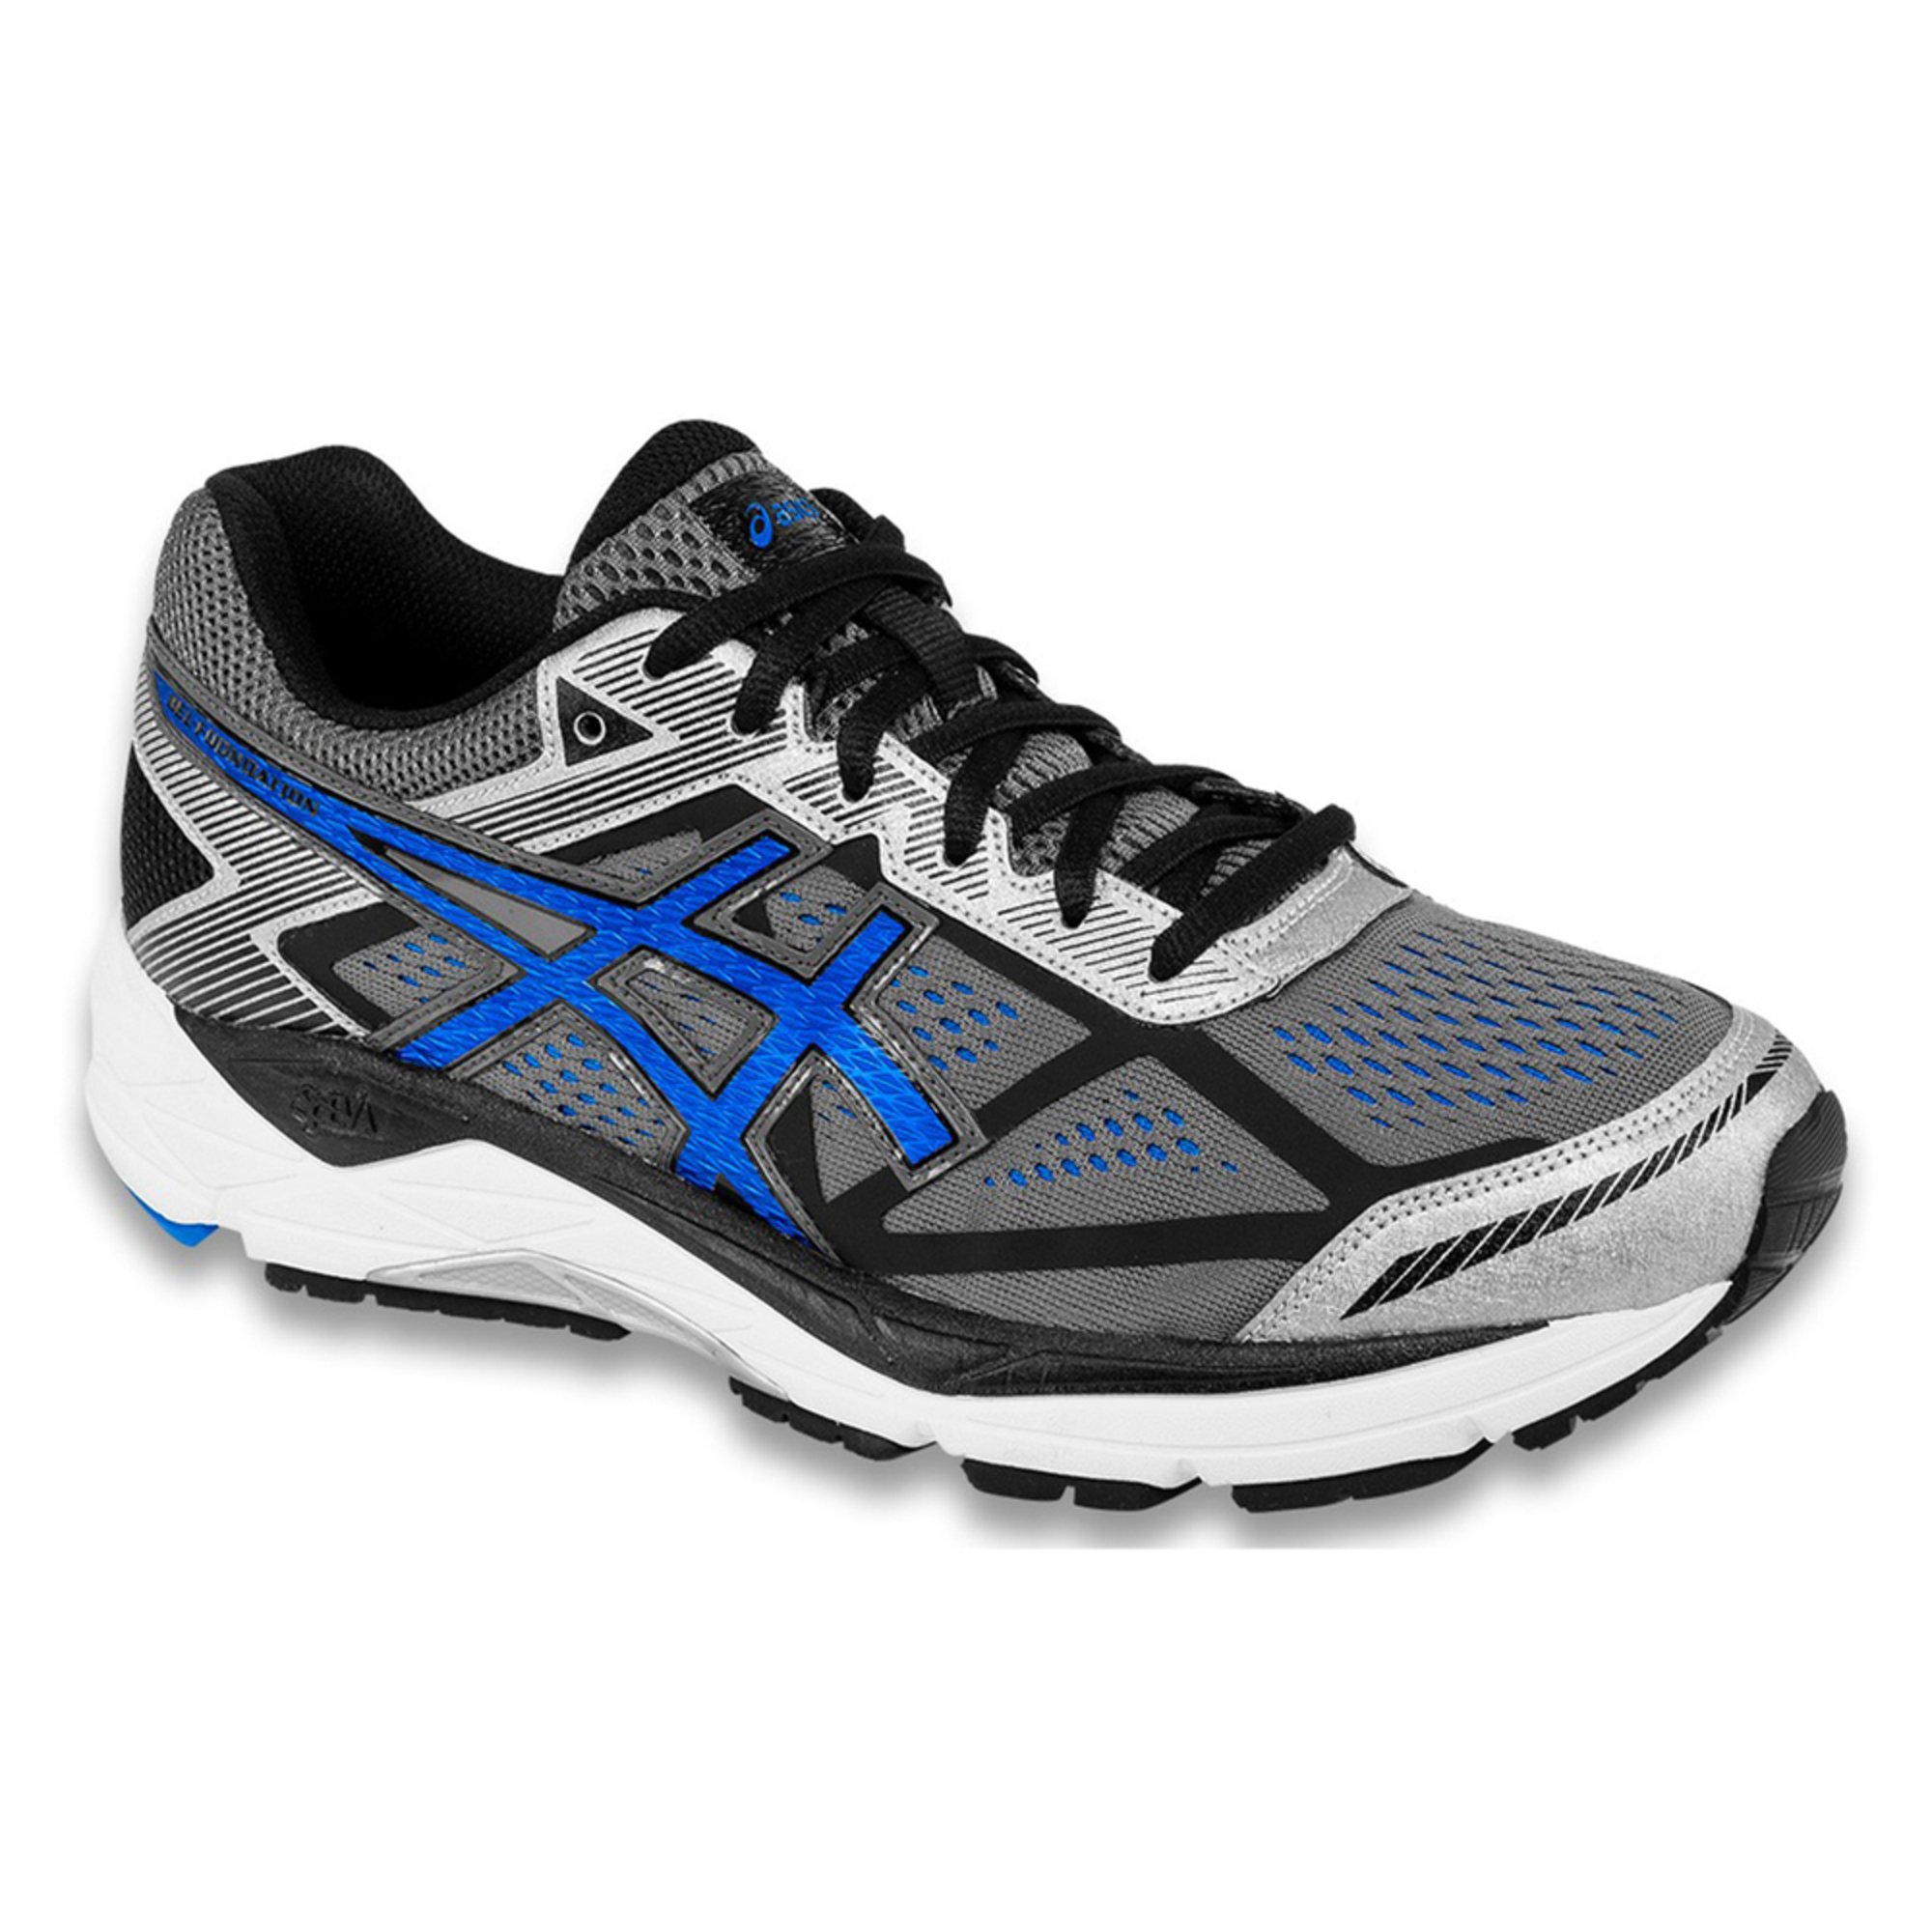 Asics Gel-foundation 12 (4e) Men's Running Shoe | Men's Running Shoes ...